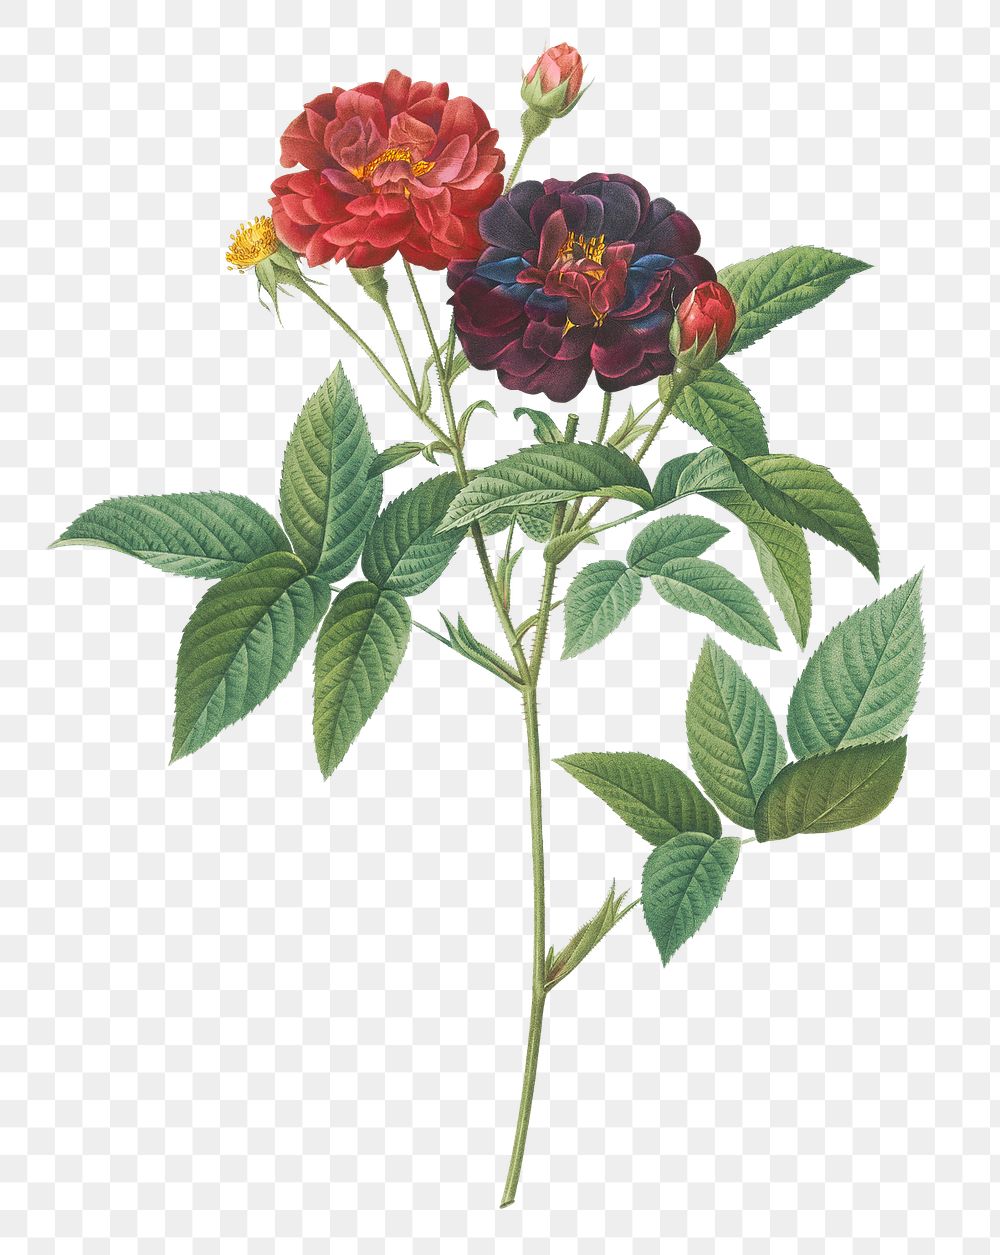 Rose of Provins transparent png